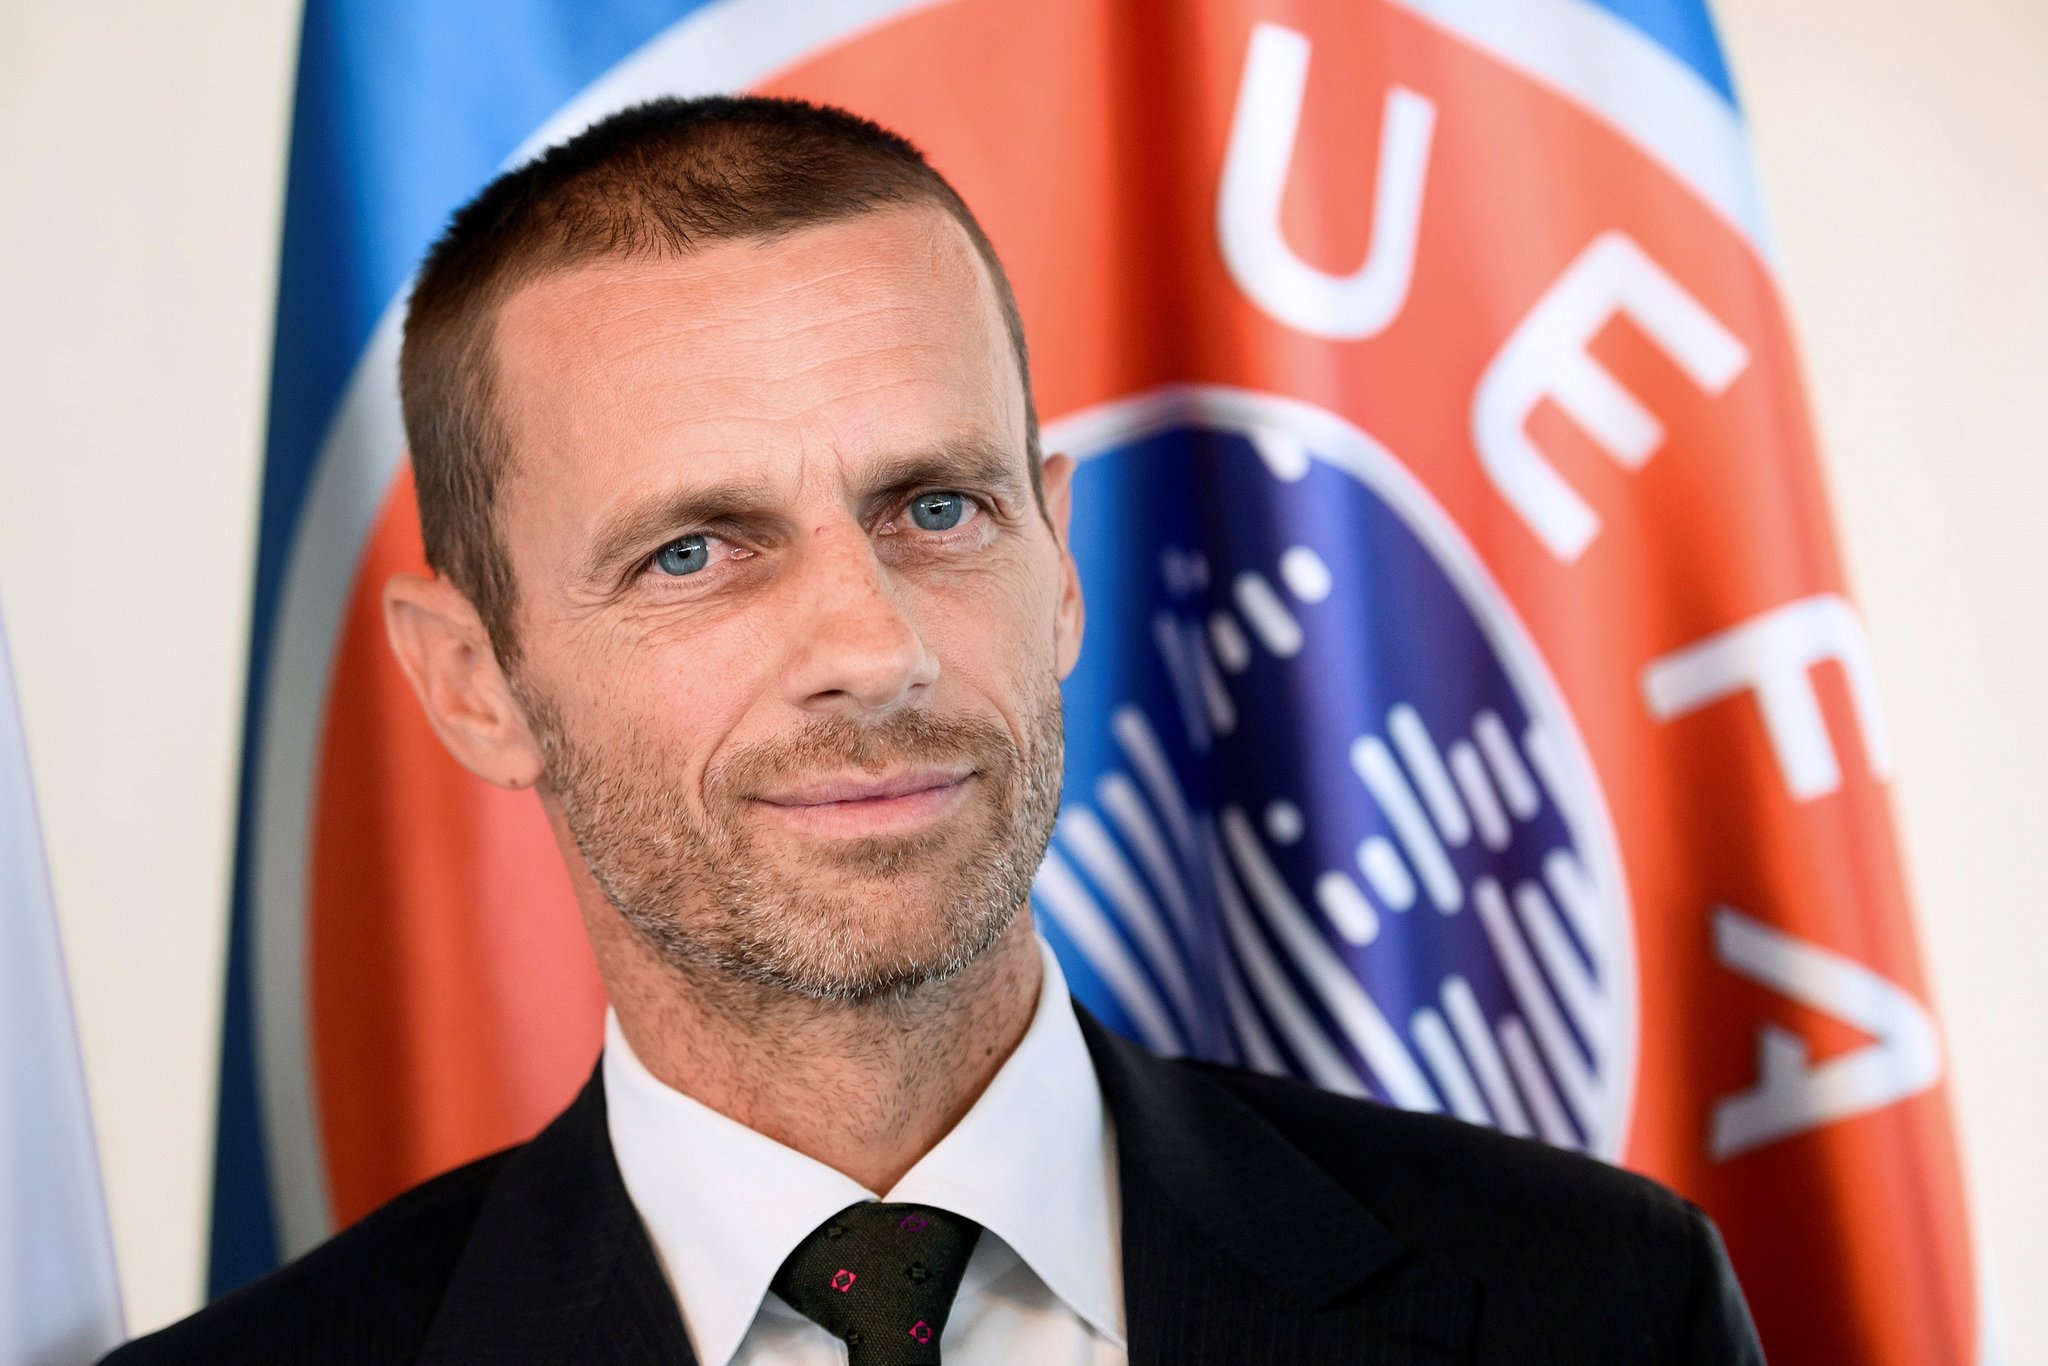 Podrška Slovencu iz BiH: Čeferin ostaje predsjednik UEFA